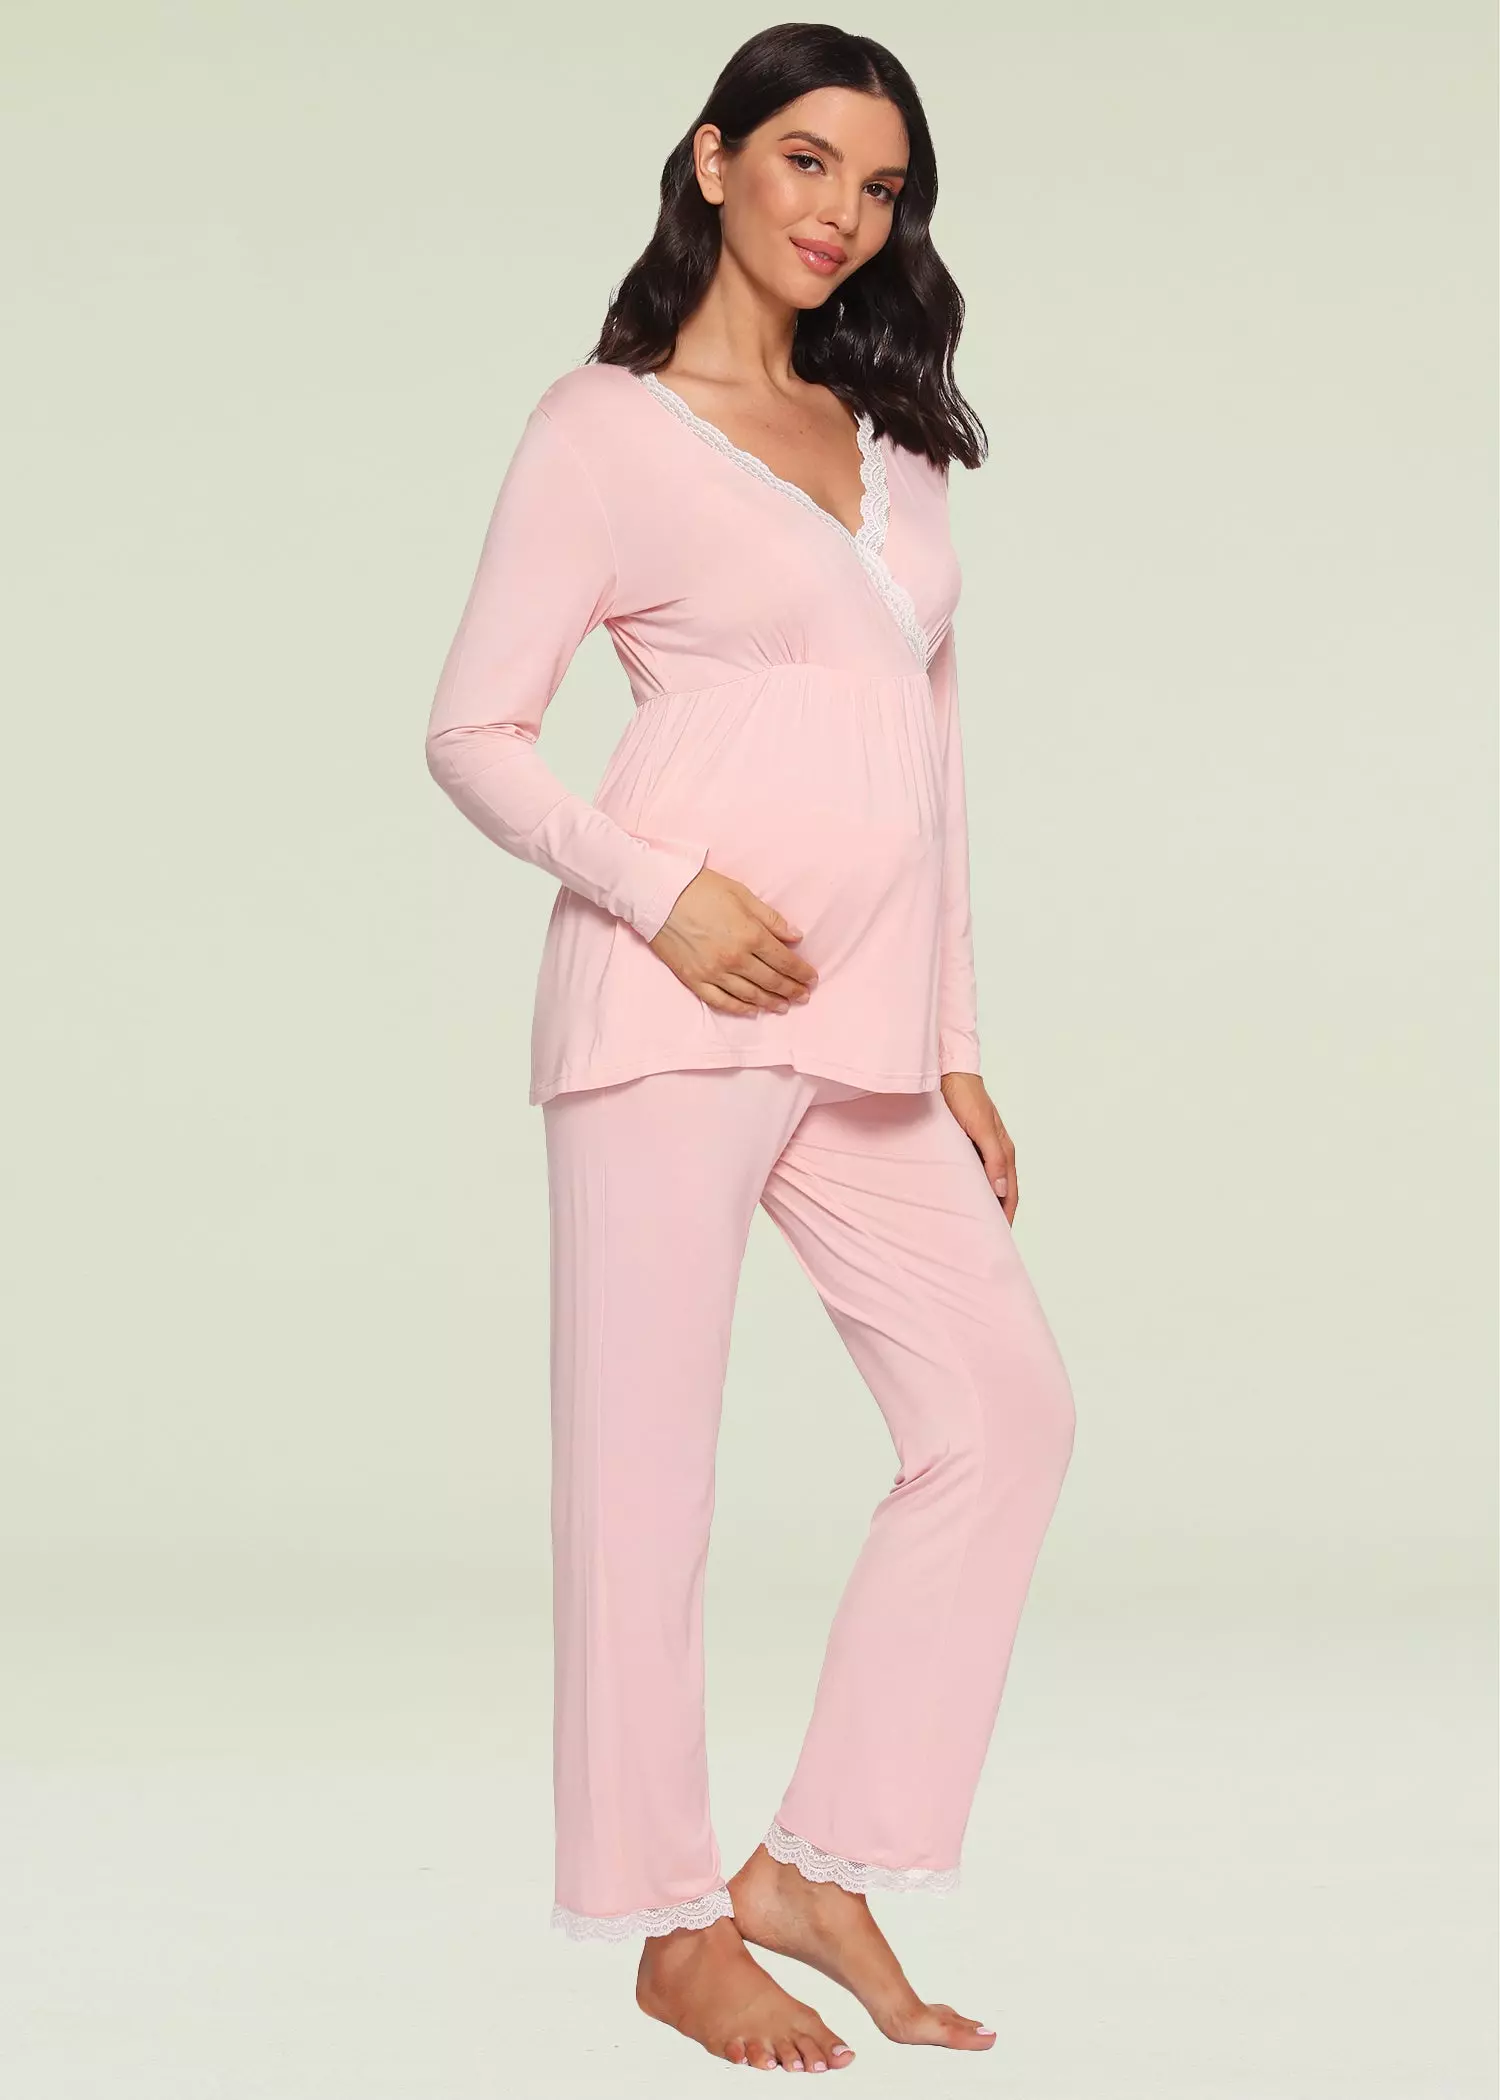 Latuza Women’s Maternity Pajama Set